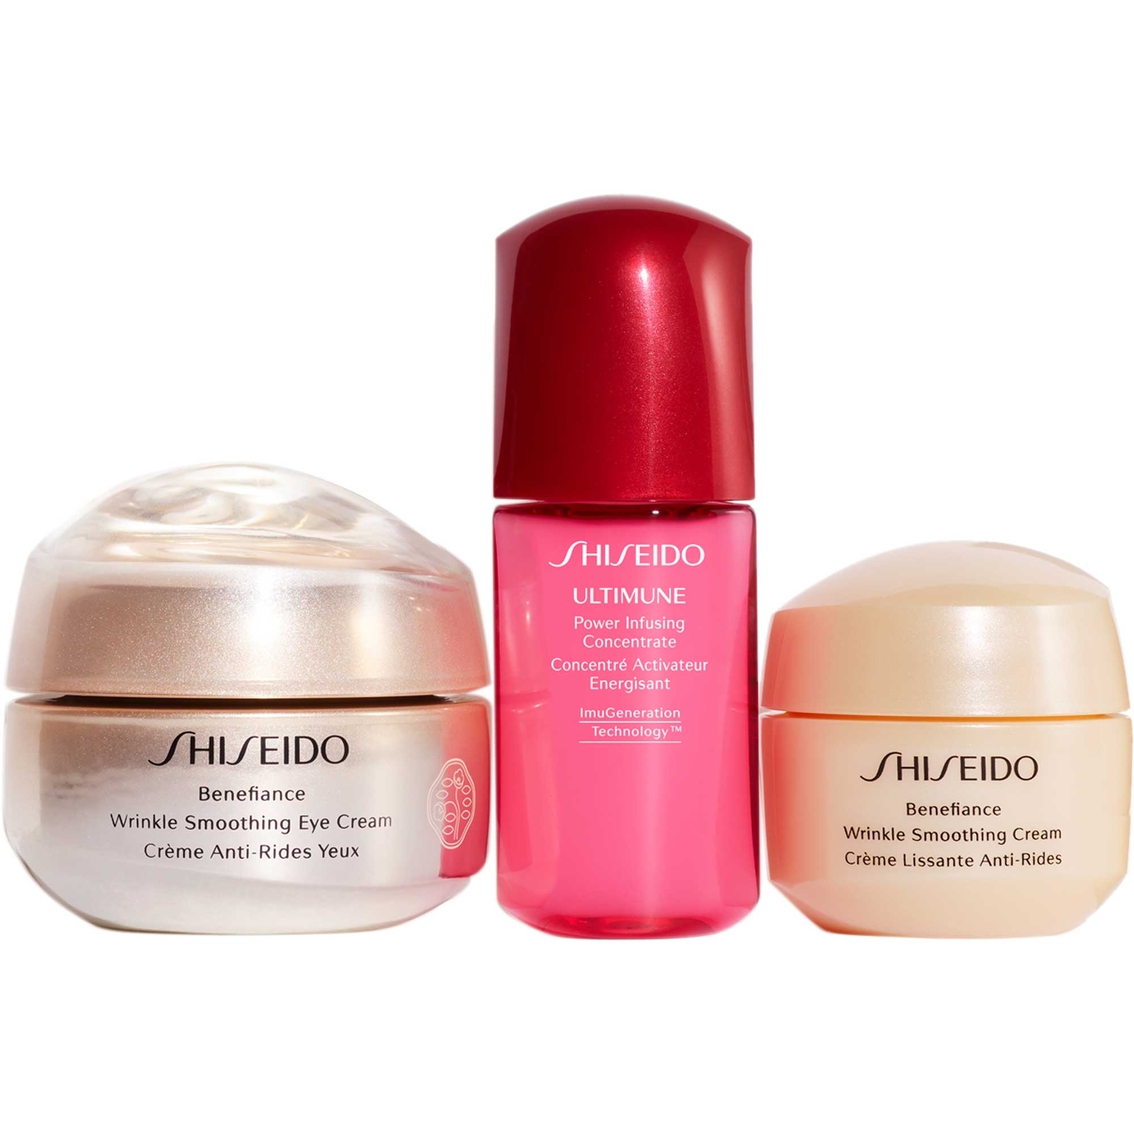 Shiseido Wrinkle Smoothing Eye Cream 3 pc. Set - Image 3 of 3